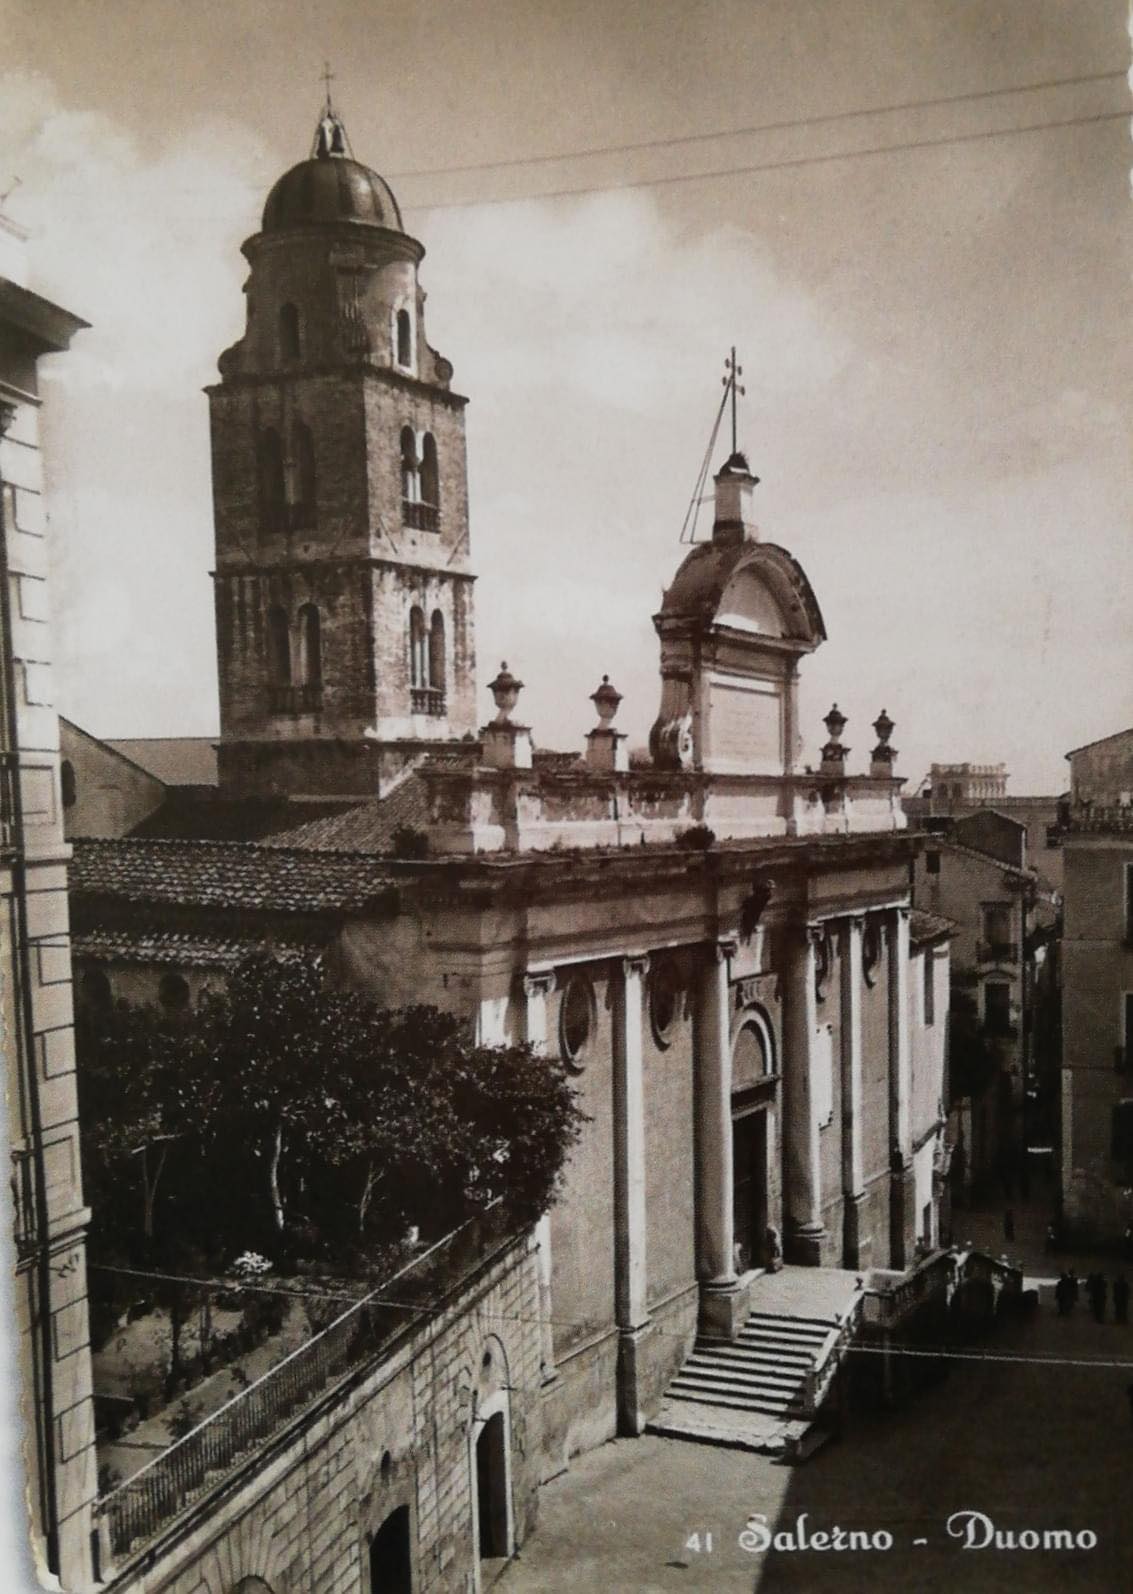 Salerno, 1941 - Il Duomo